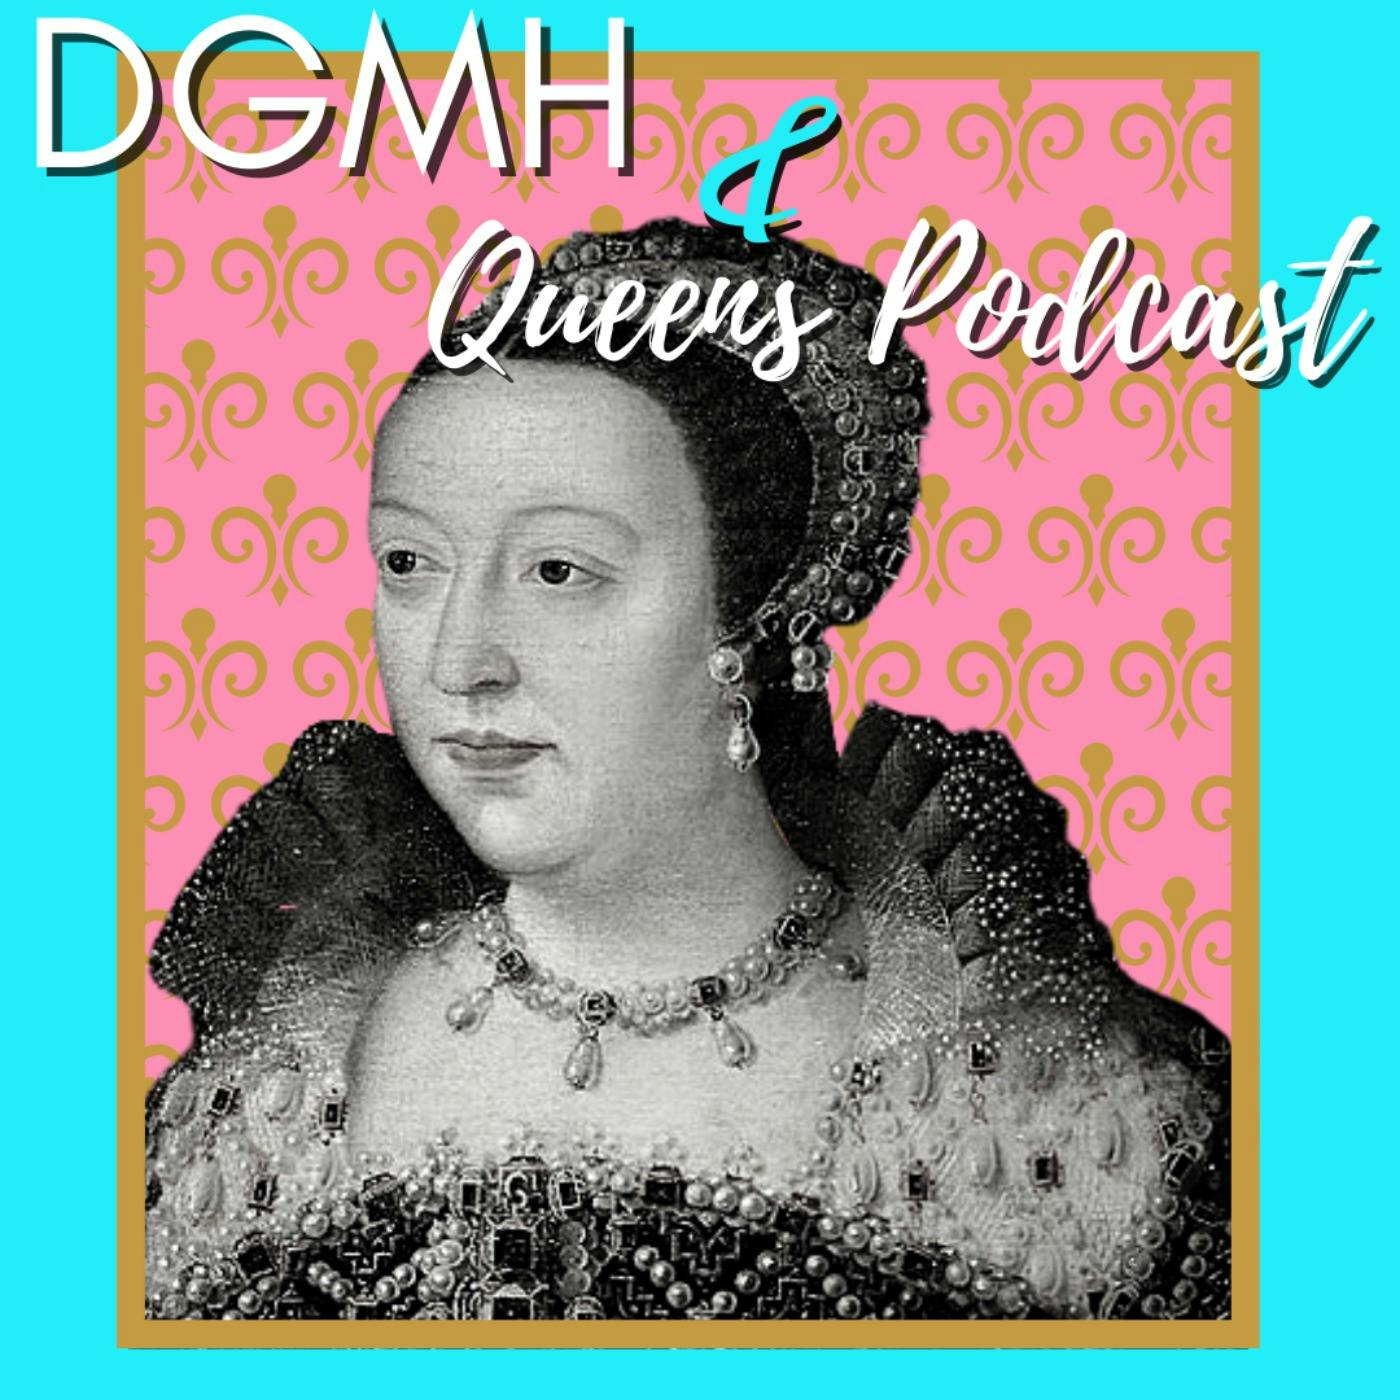 DGMH: Catherine de Medici